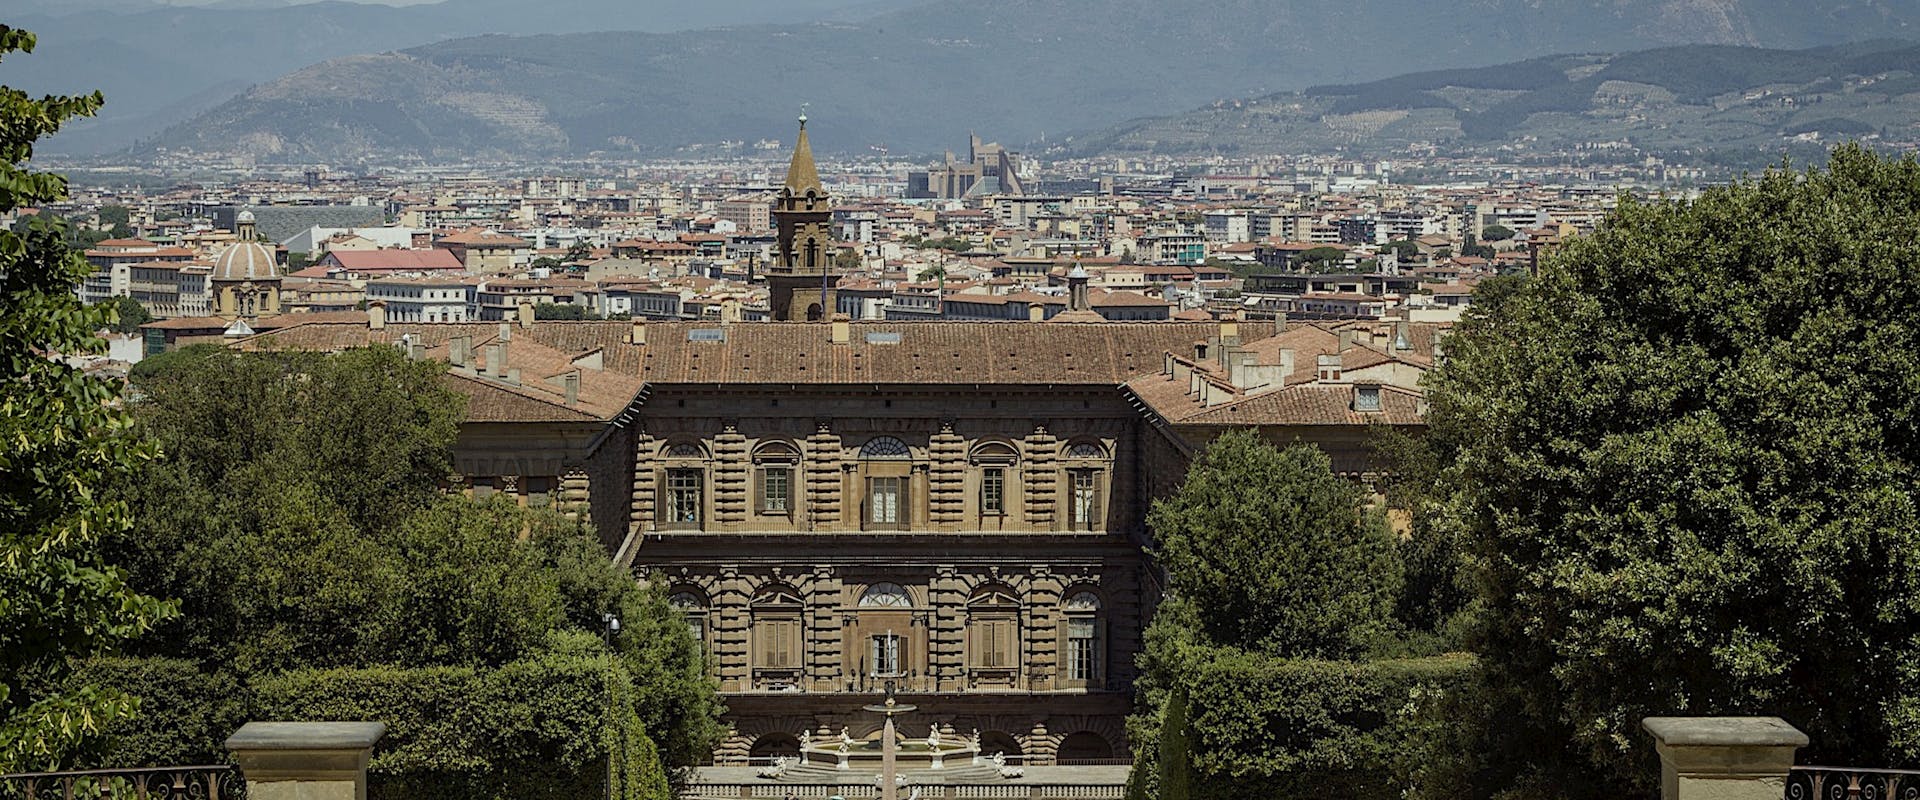 Palazzo Pitti e Firenze visti dalla collina di Boboli